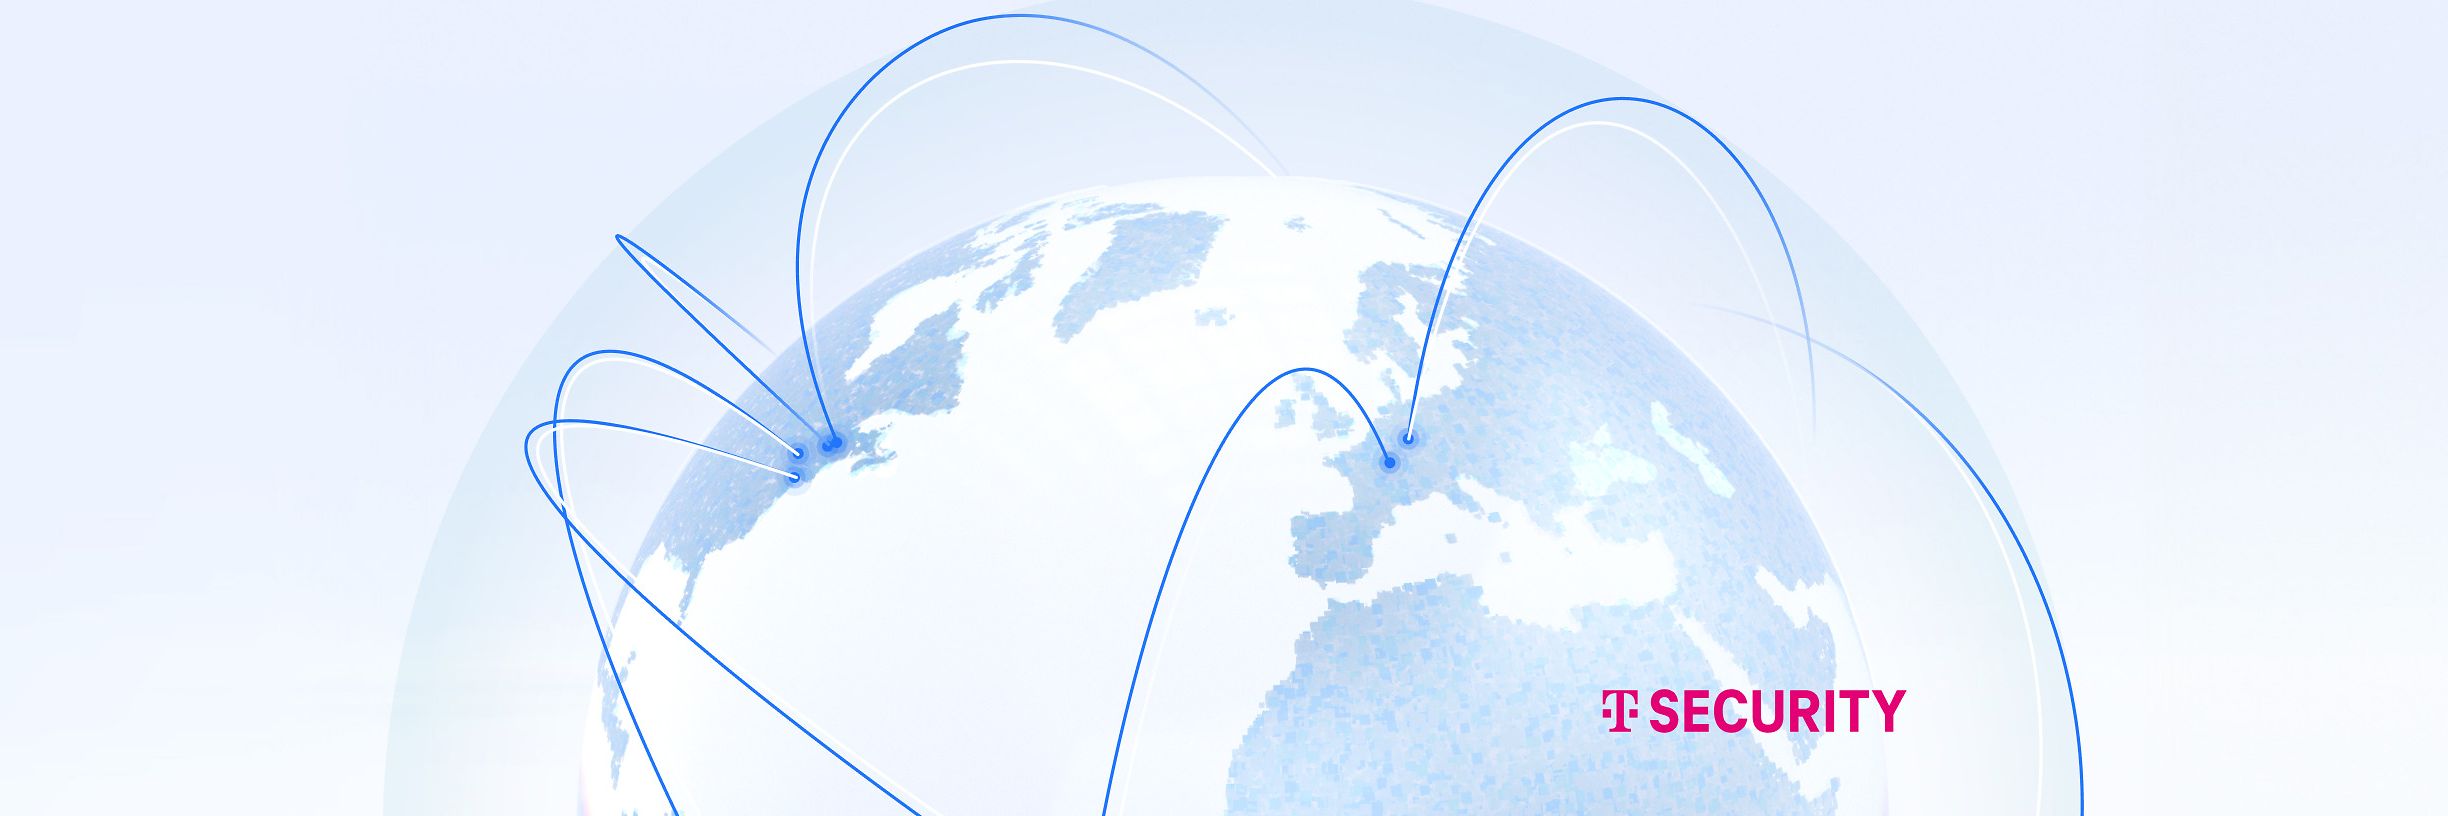 Abstrakte Bühnengrafik mit blauer Weltkugel mit Telekom Security Logo